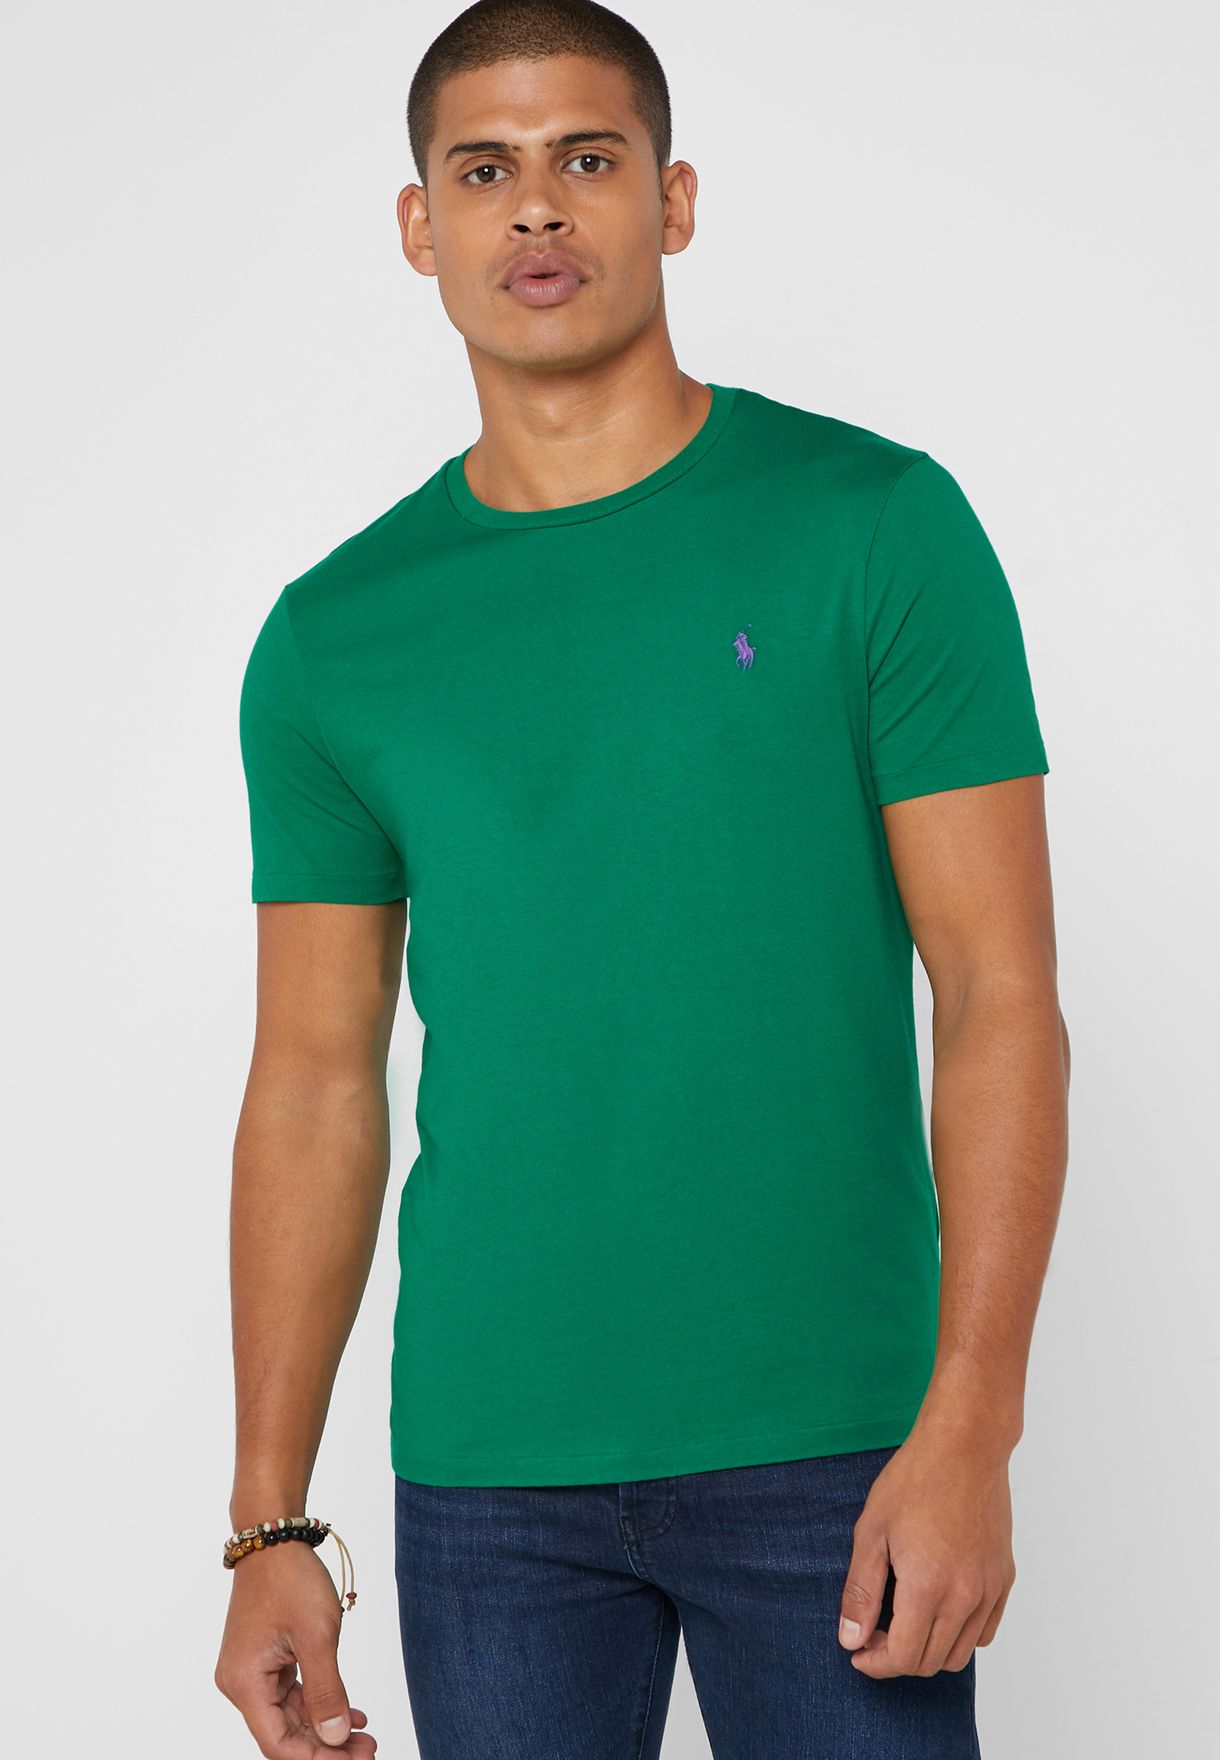 ralph lauren green t shirt